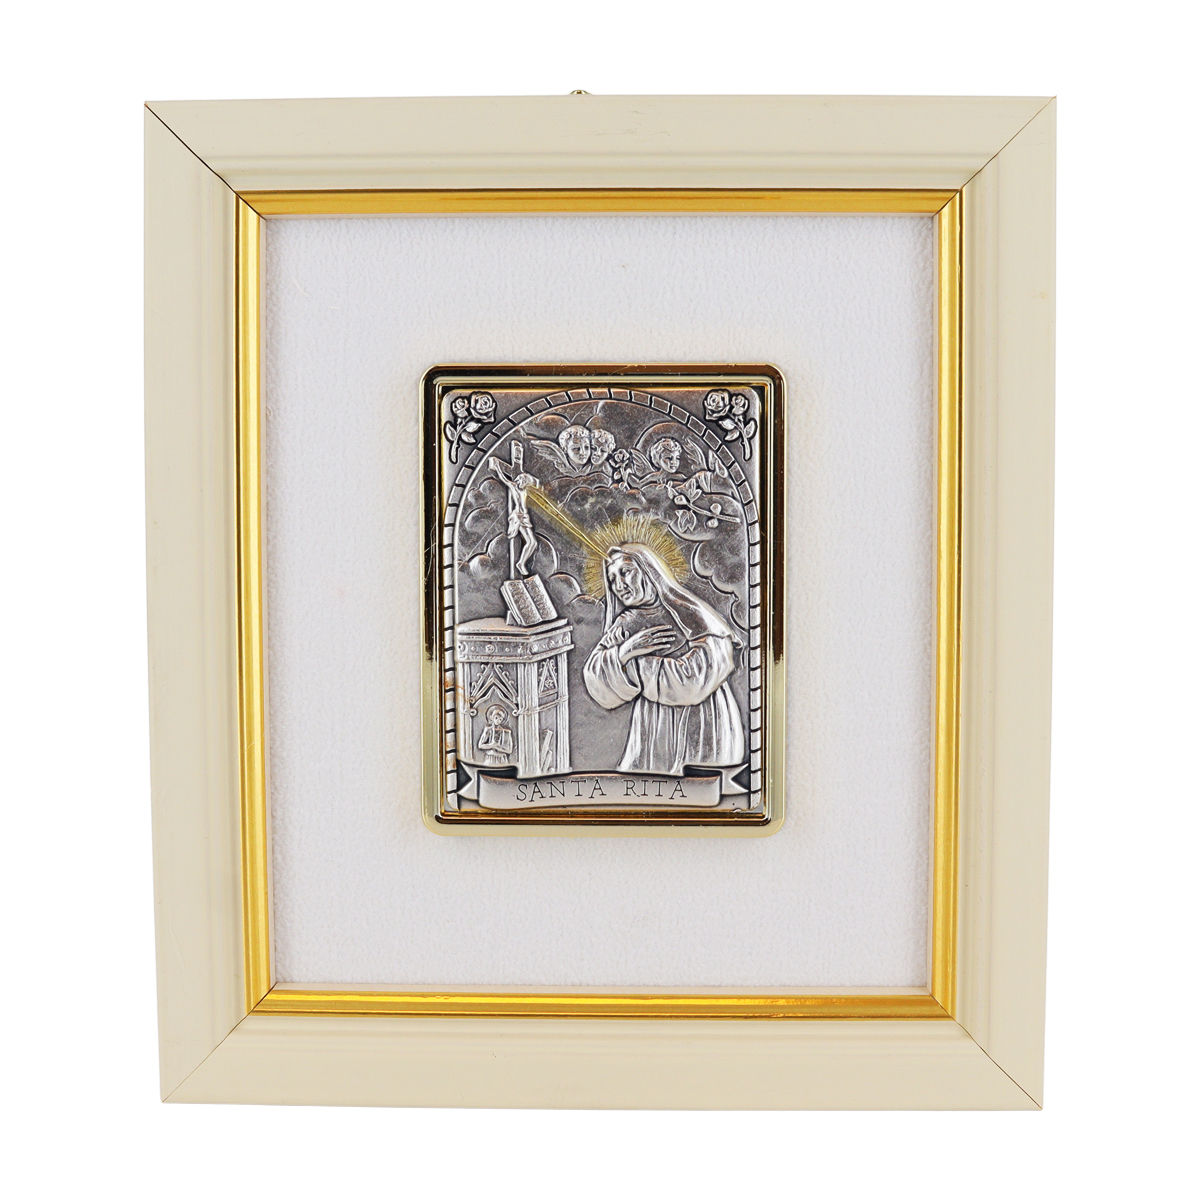 Cadre en bois à suspendre H. 13 x 11.5 cm sujet en plaque laminé argentée et dorée, plusieurs modèles.